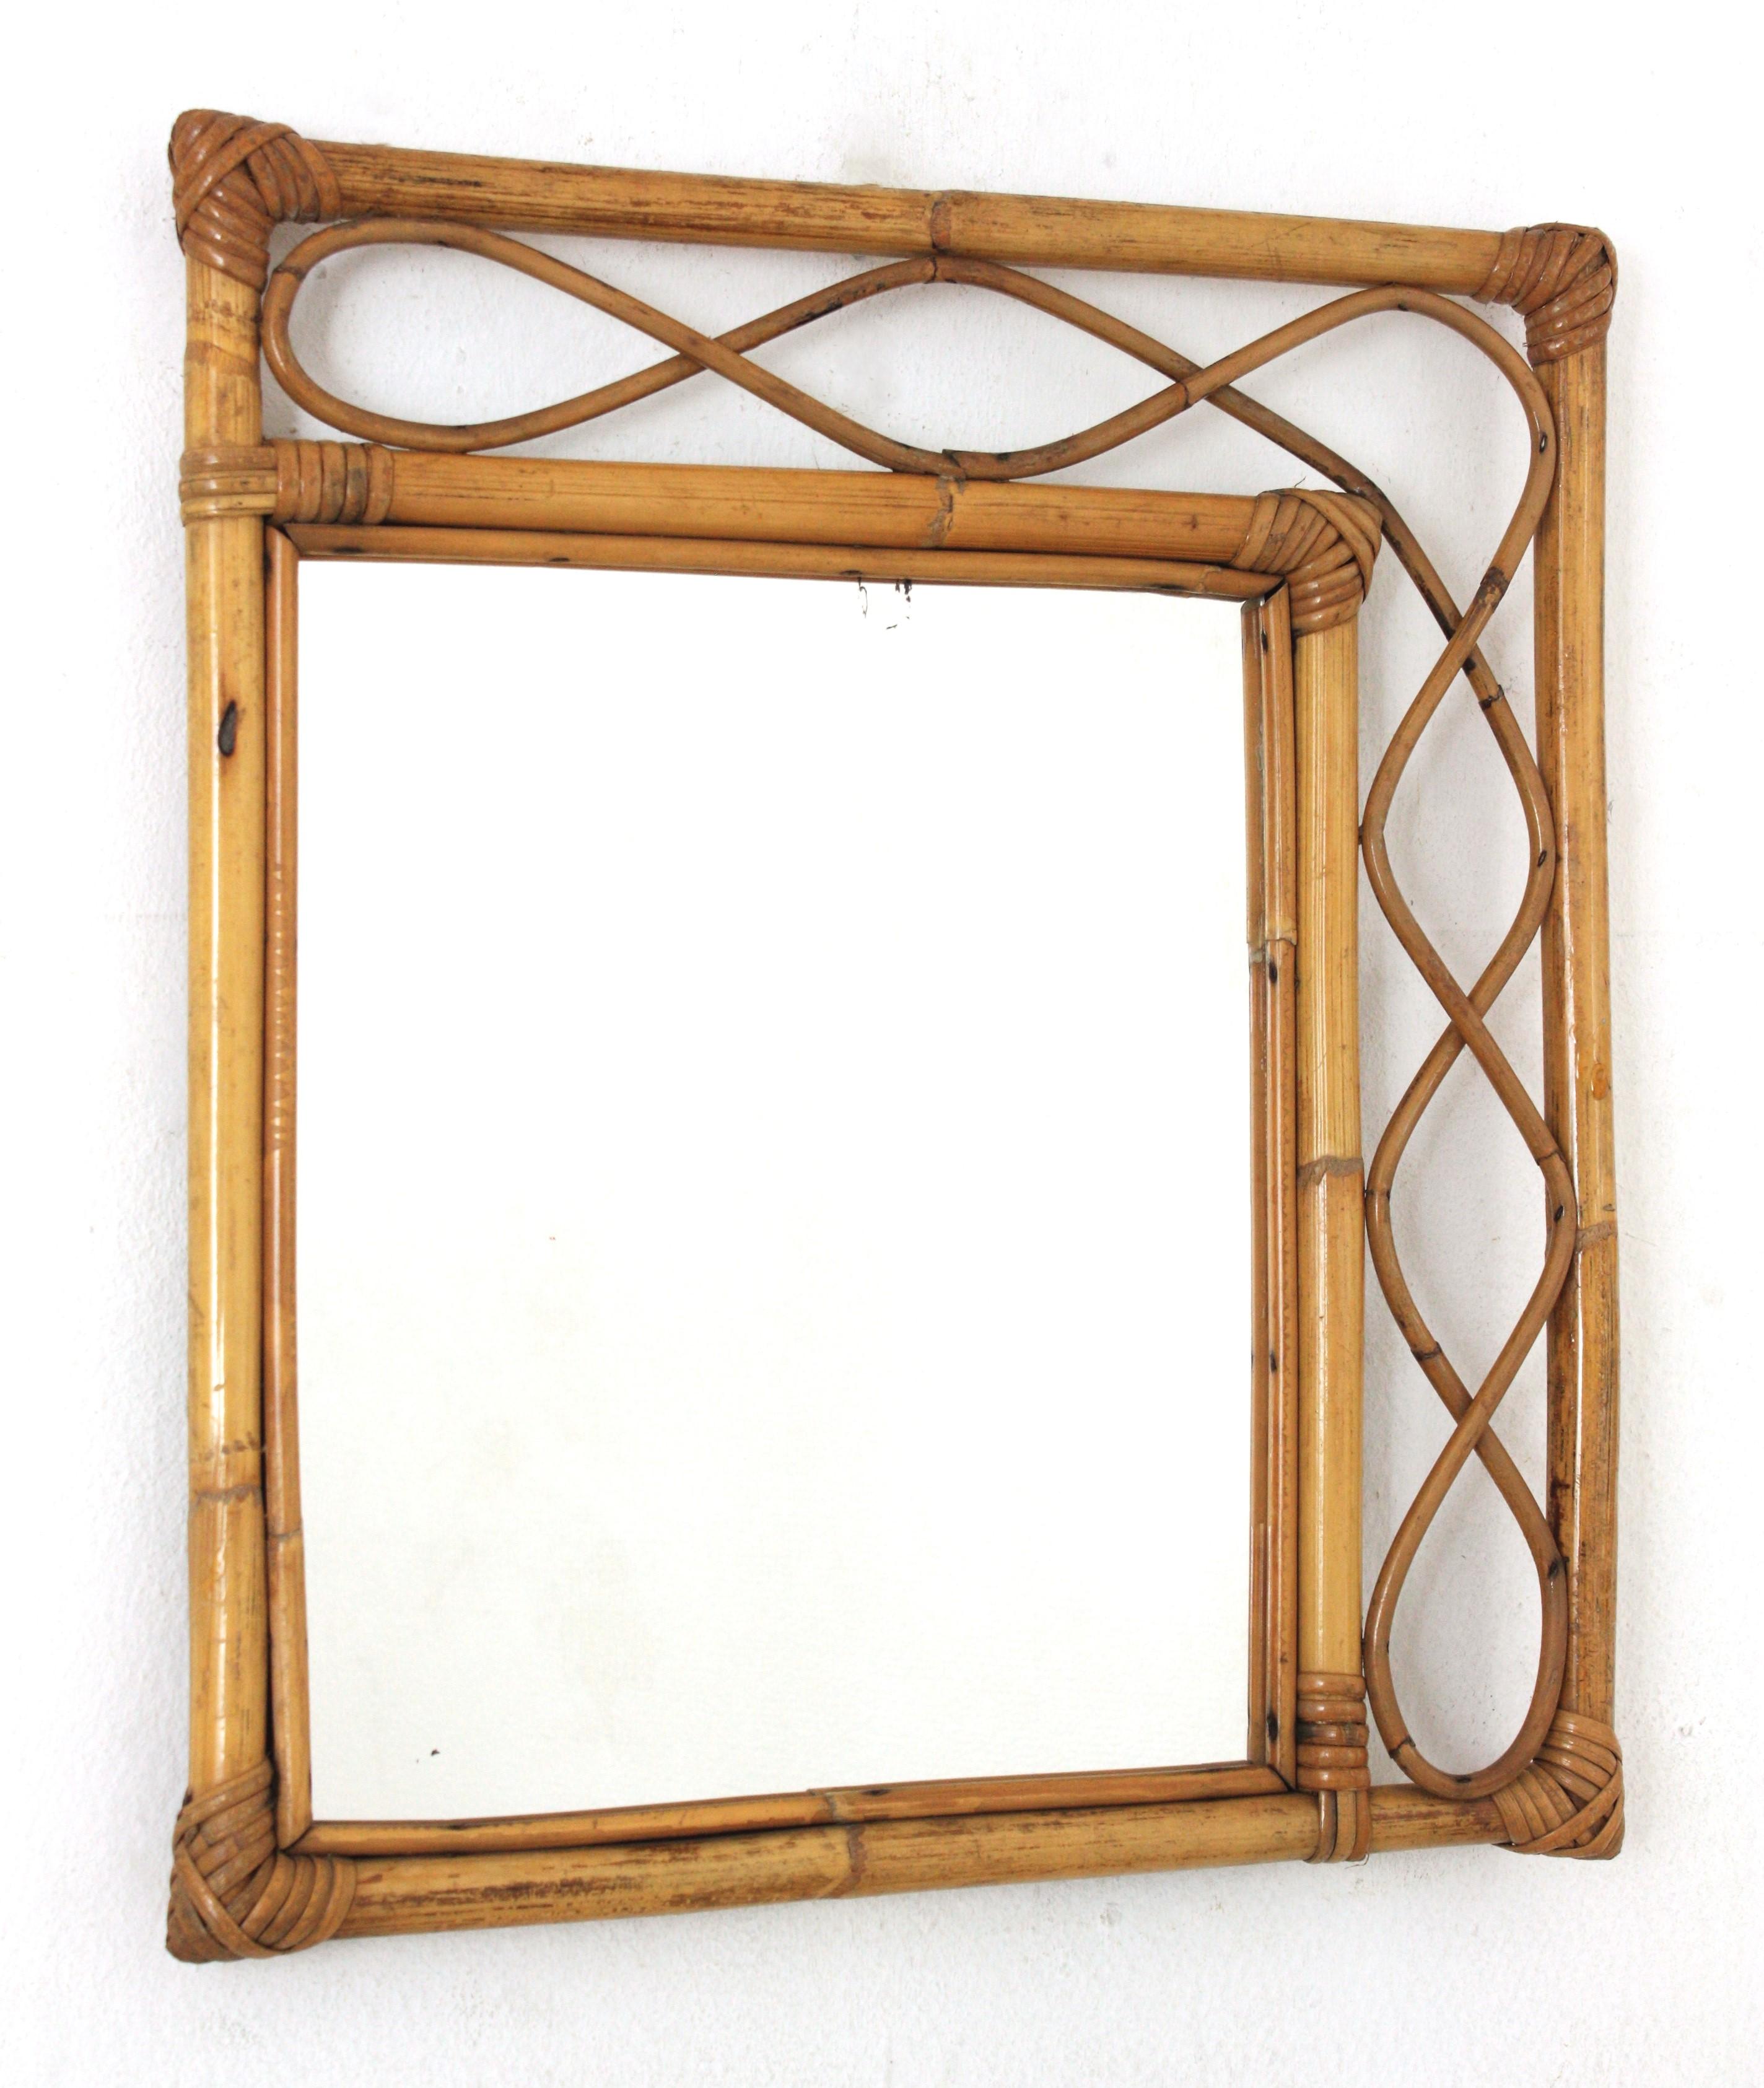 Auffälliger, handgefertigter Spiegel aus Bambus und Rattan im Stil des Mid-Century Modern Franco Albini. Italien, 1960er Jahre.
Dieser Spiegel hat einen rechteckigen Doppelrahmen aus Bambus mit dekorativen Rattanwellen zwischen den Bambusrohren.
Es